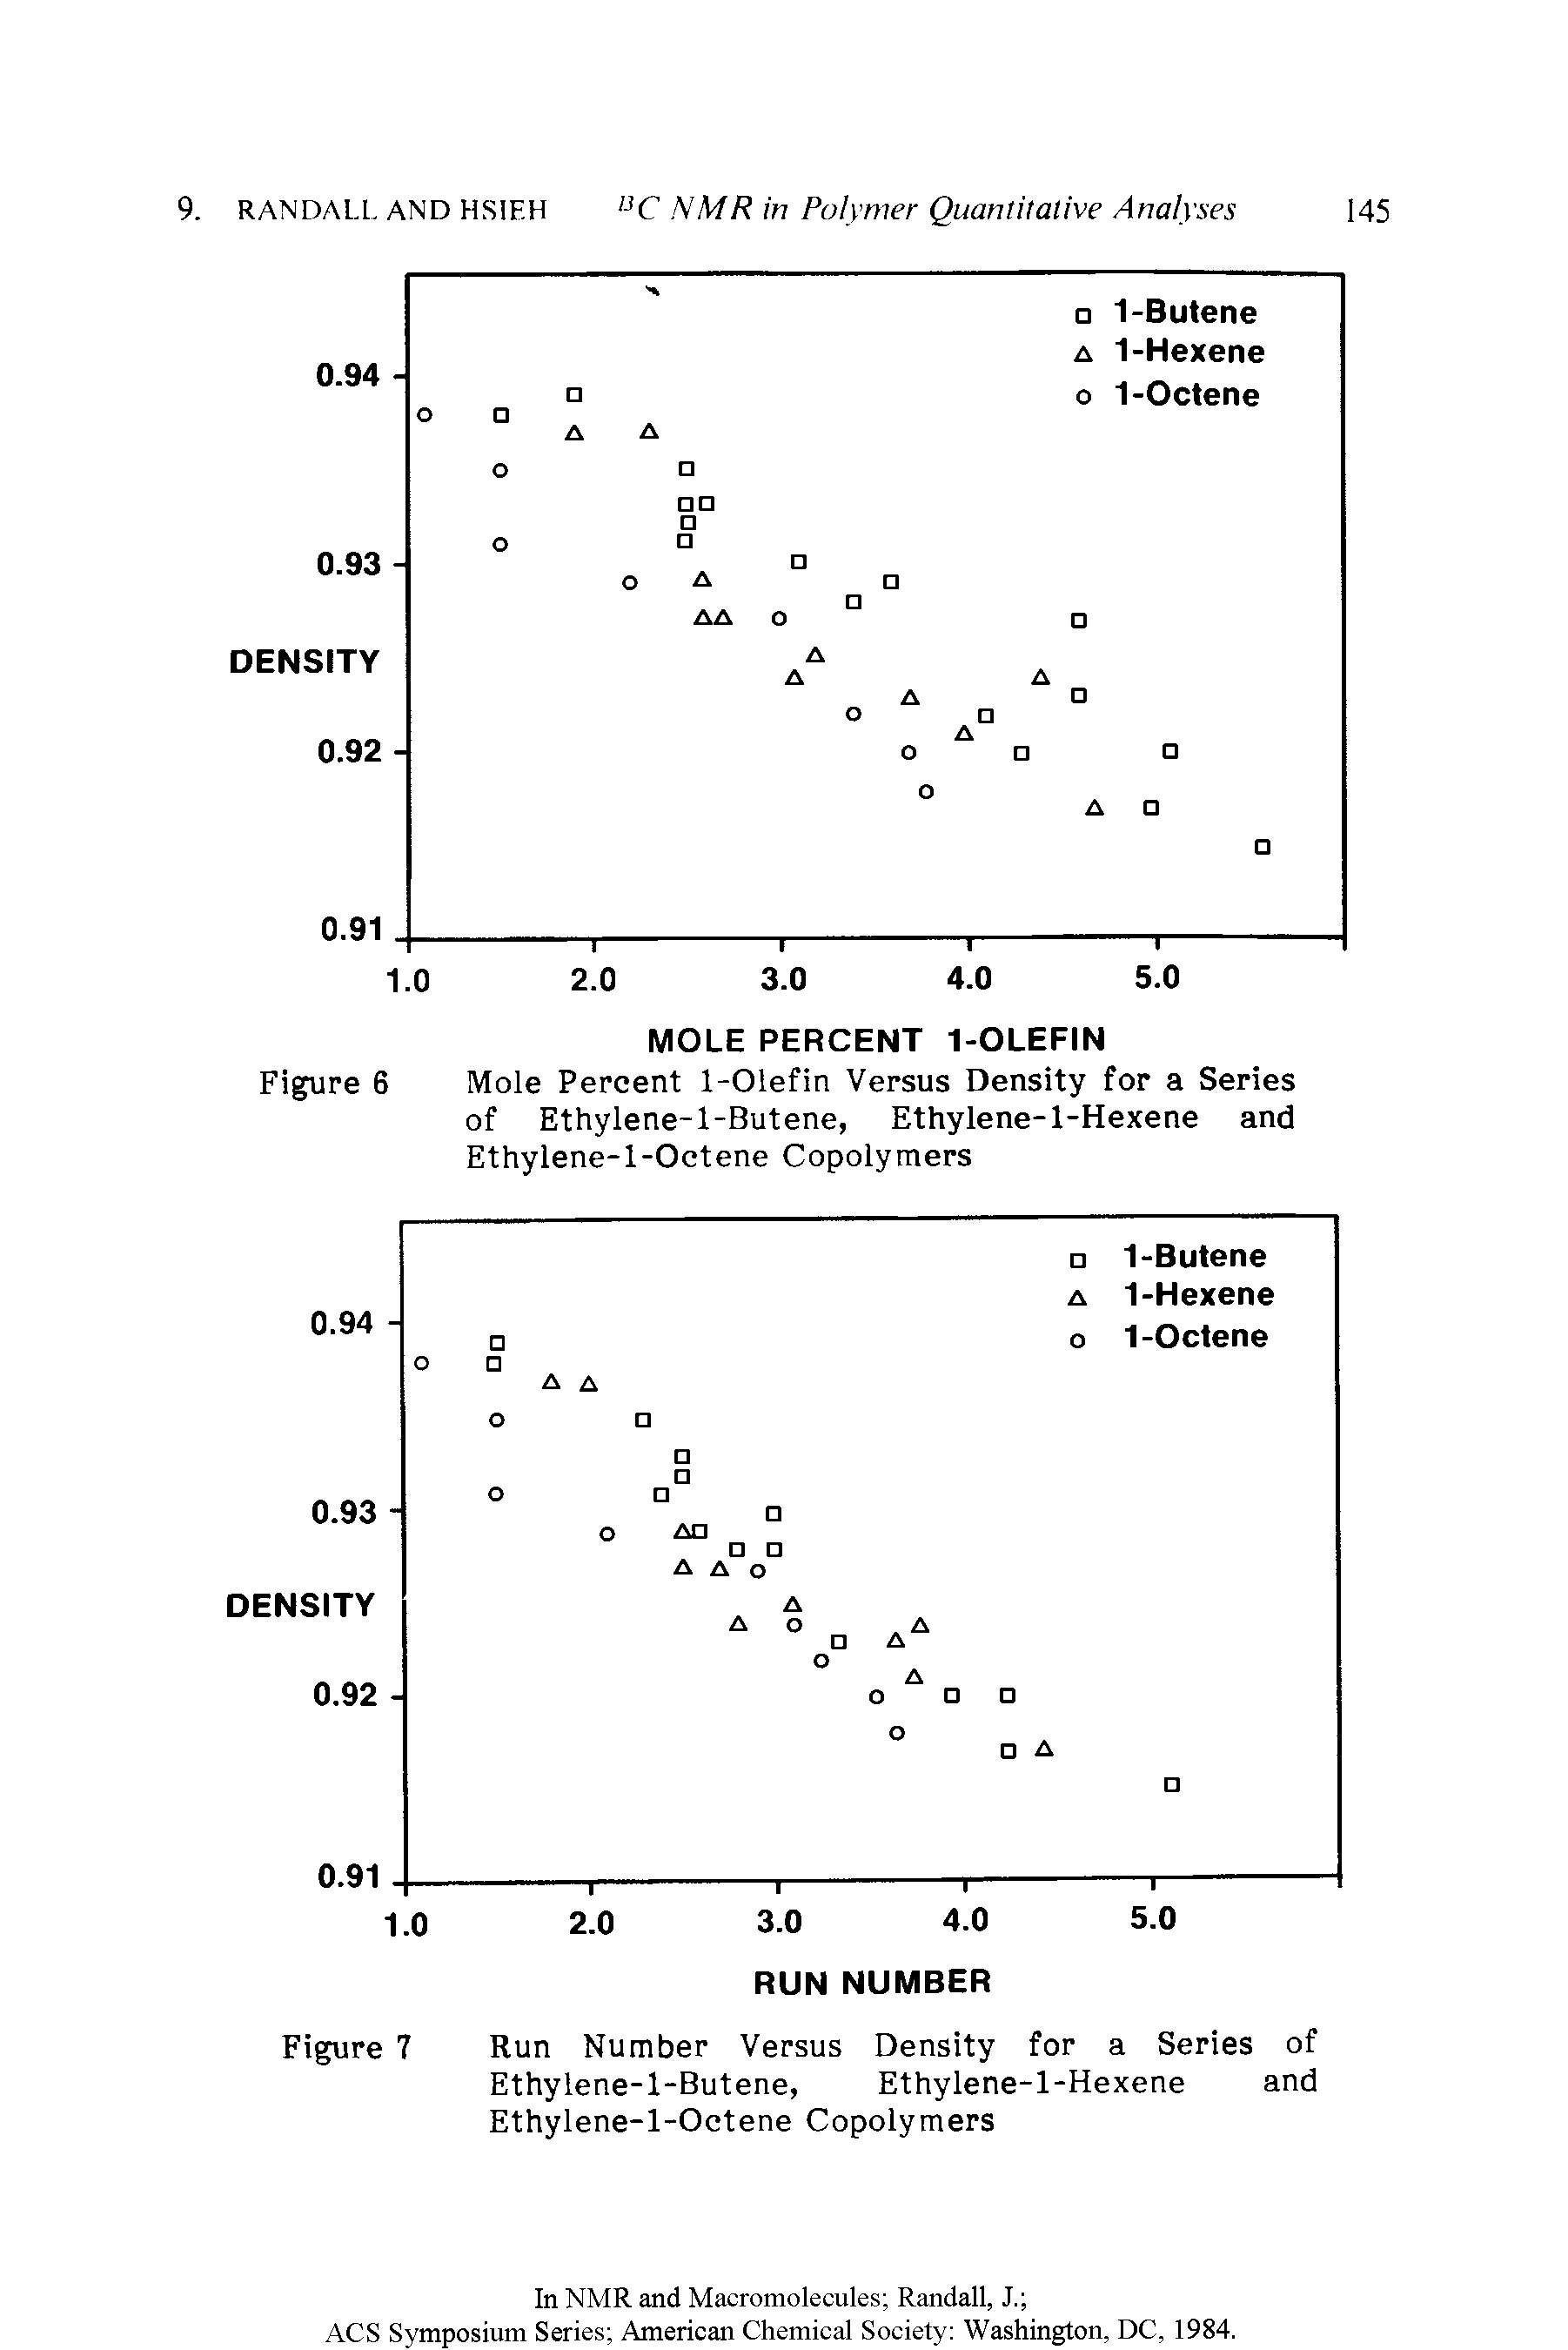 Figure 6 Mole Percent 1-Olefin Versus Density for a Series of Ethylene-l-Butene, Ethylene-1-Hexene and Ethylene-l-Octene Copolymers...